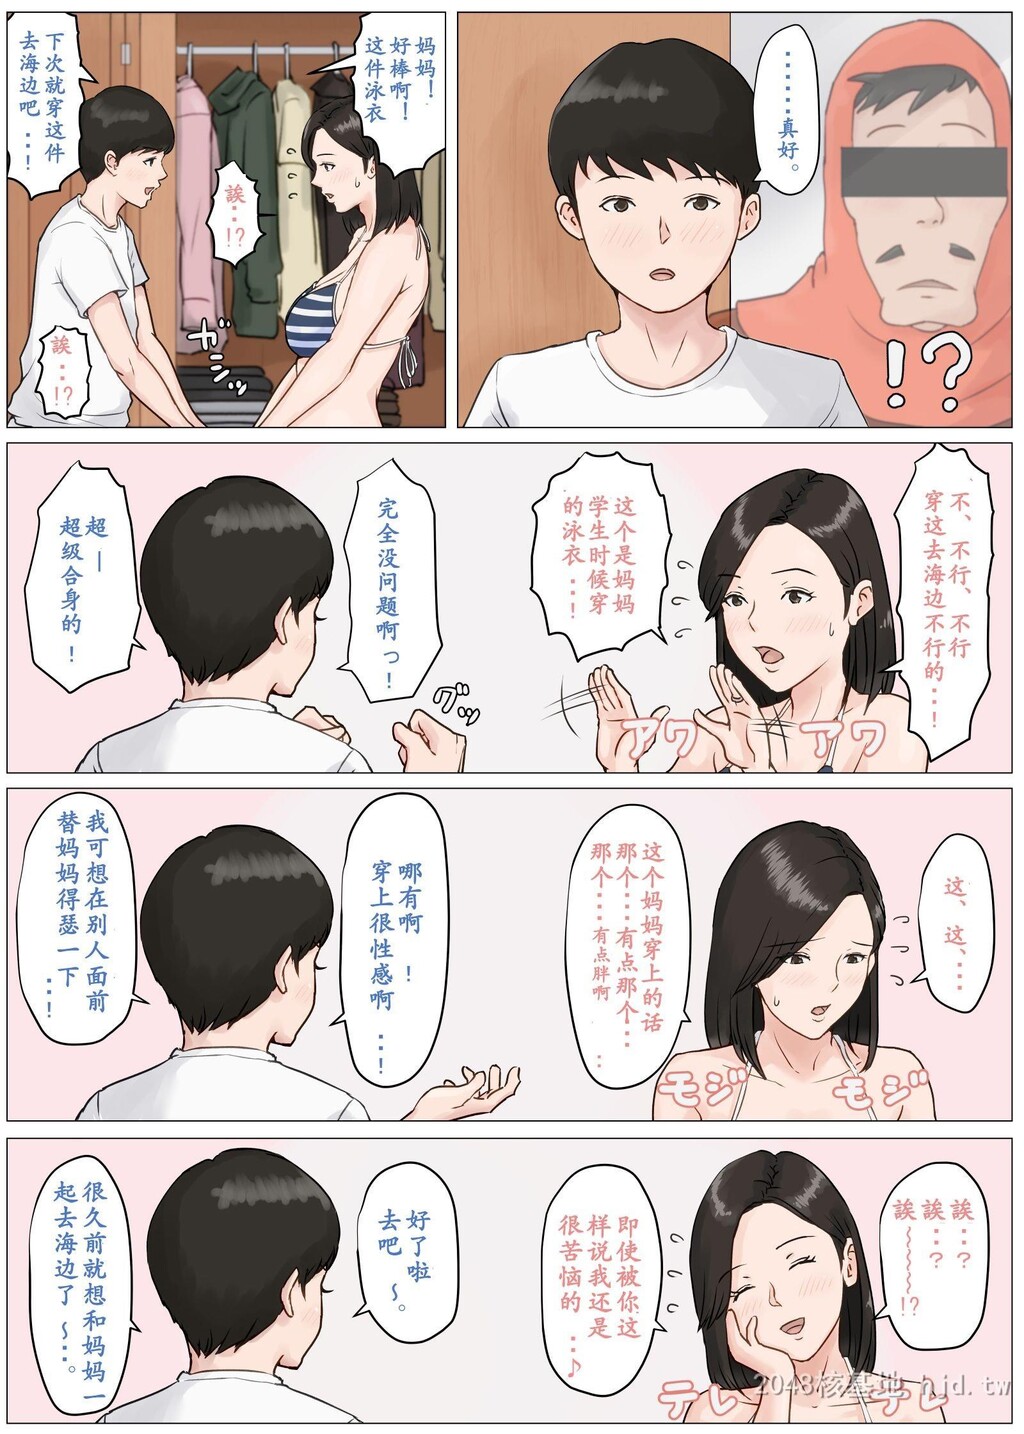 [中文][全彩]非母亲不可03[49P]第1页 作者:Publisher 帖子ID:262769 TAG:动漫图片,卡通漫畫,2048核基地